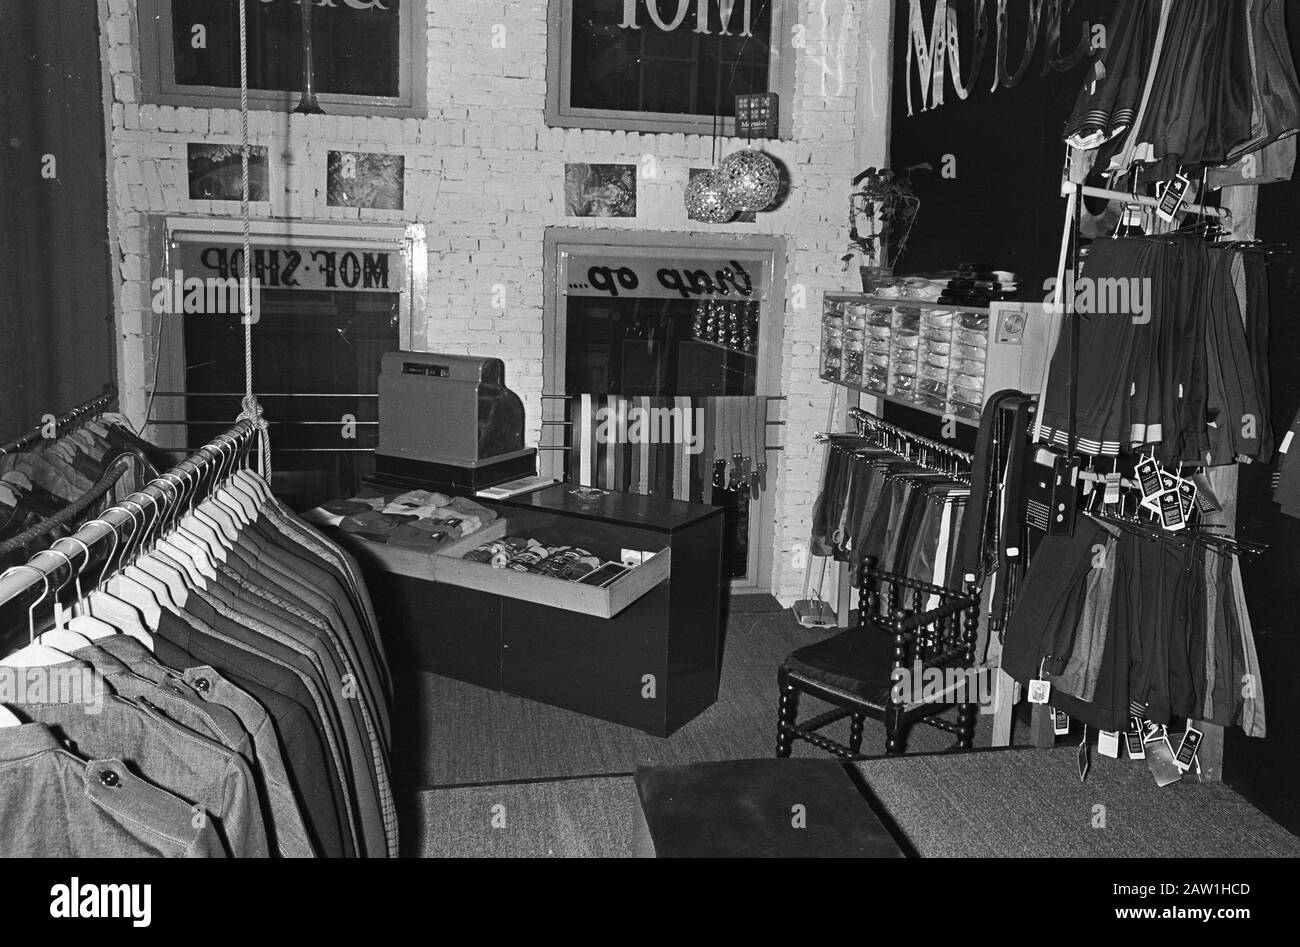 Misión Textilia. Tienda Haarlemmerdijk Tienda de ropa 'Tienda' Mof '1885 (originalmente ropa de trabajo y overalls) a Haarlemmerdijk, lleva su tiempo mí Fecha: 14 de noviembre de 1967